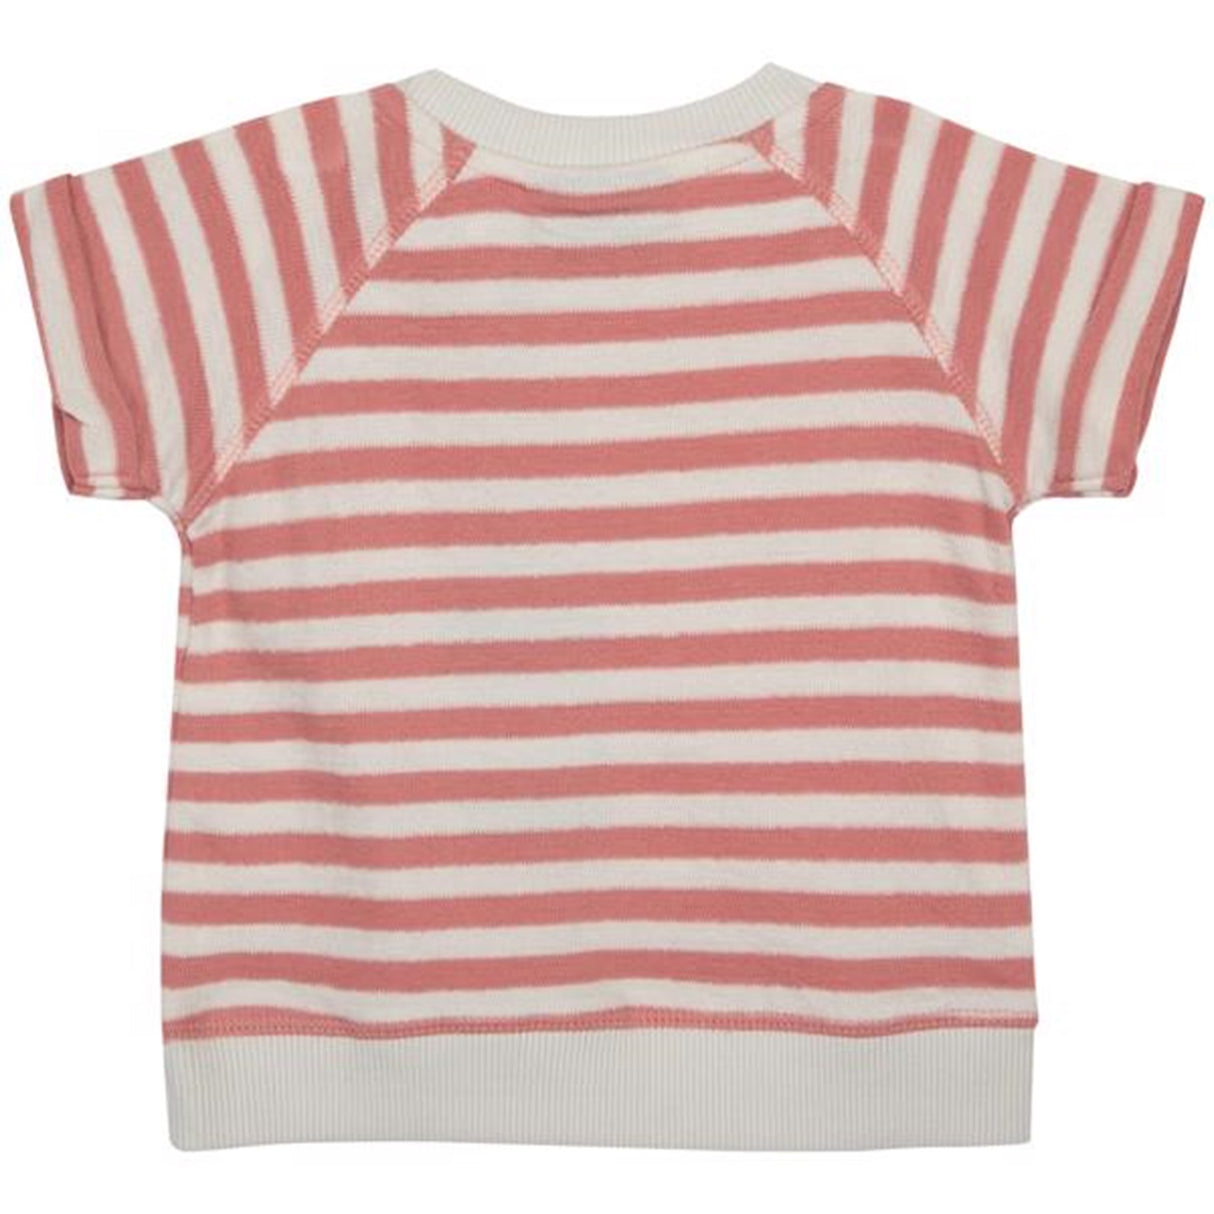 Sofie Schnoor Pink Off White Stripe T-shirt 5